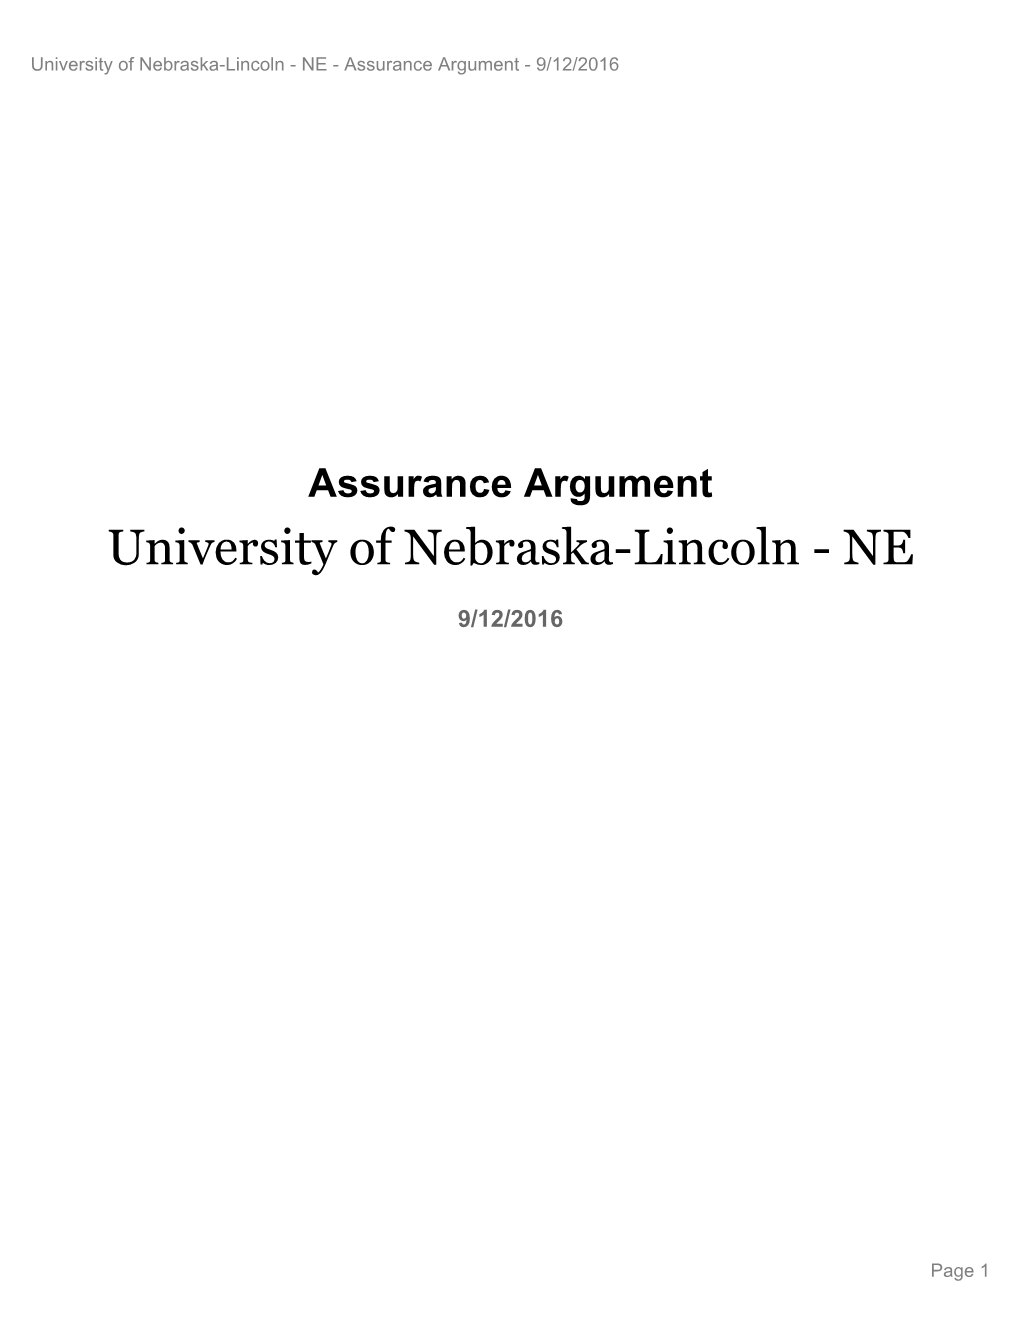 Nebraska-Lincoln - NE - Assurance Argument - 9/12/2016